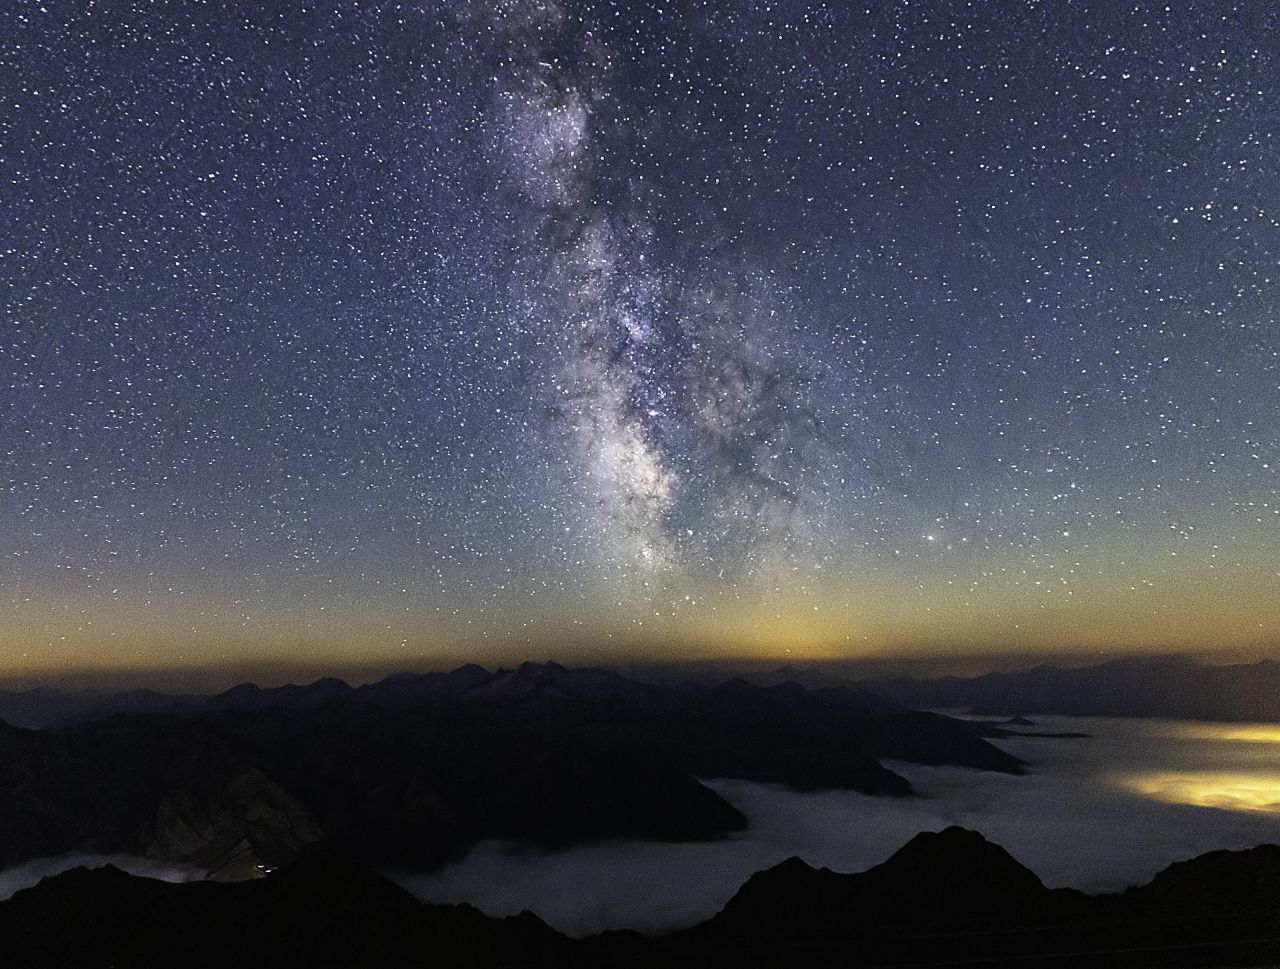 Unsere Haus-Galaxie, die Milchstraße über den französischen Pyrenäen: Licht braucht 120.000 Jahre, um sie einmal zu durchqueren. Von der Erde zum Mond braucht es nur eine gute Sekunde.